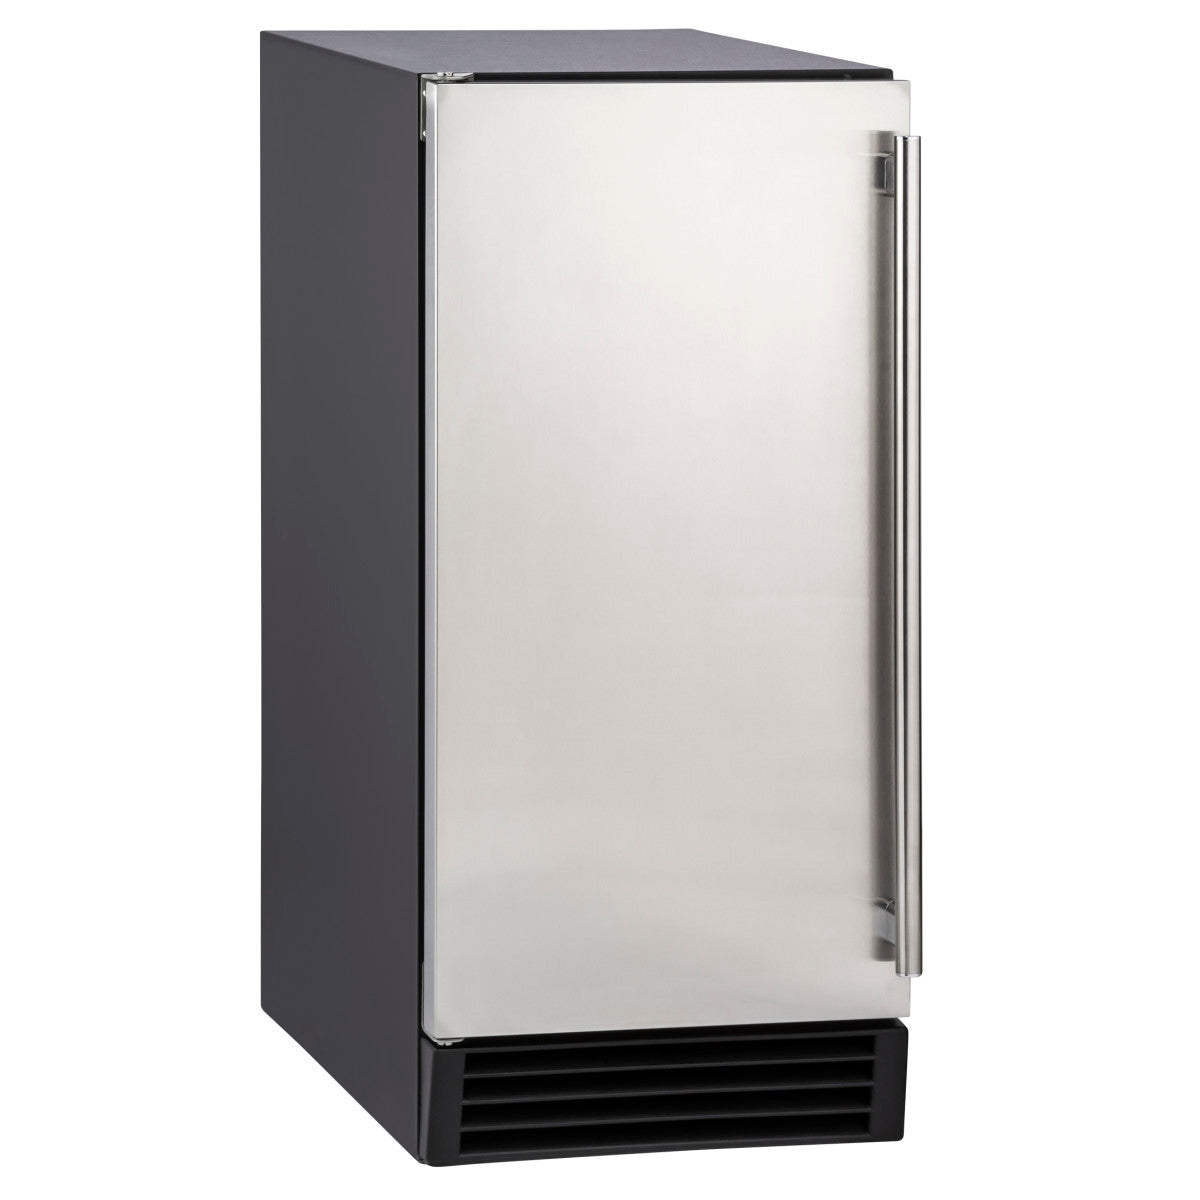 Maxx Ice Premium Indoor Self-Contained Ice Machine, 15